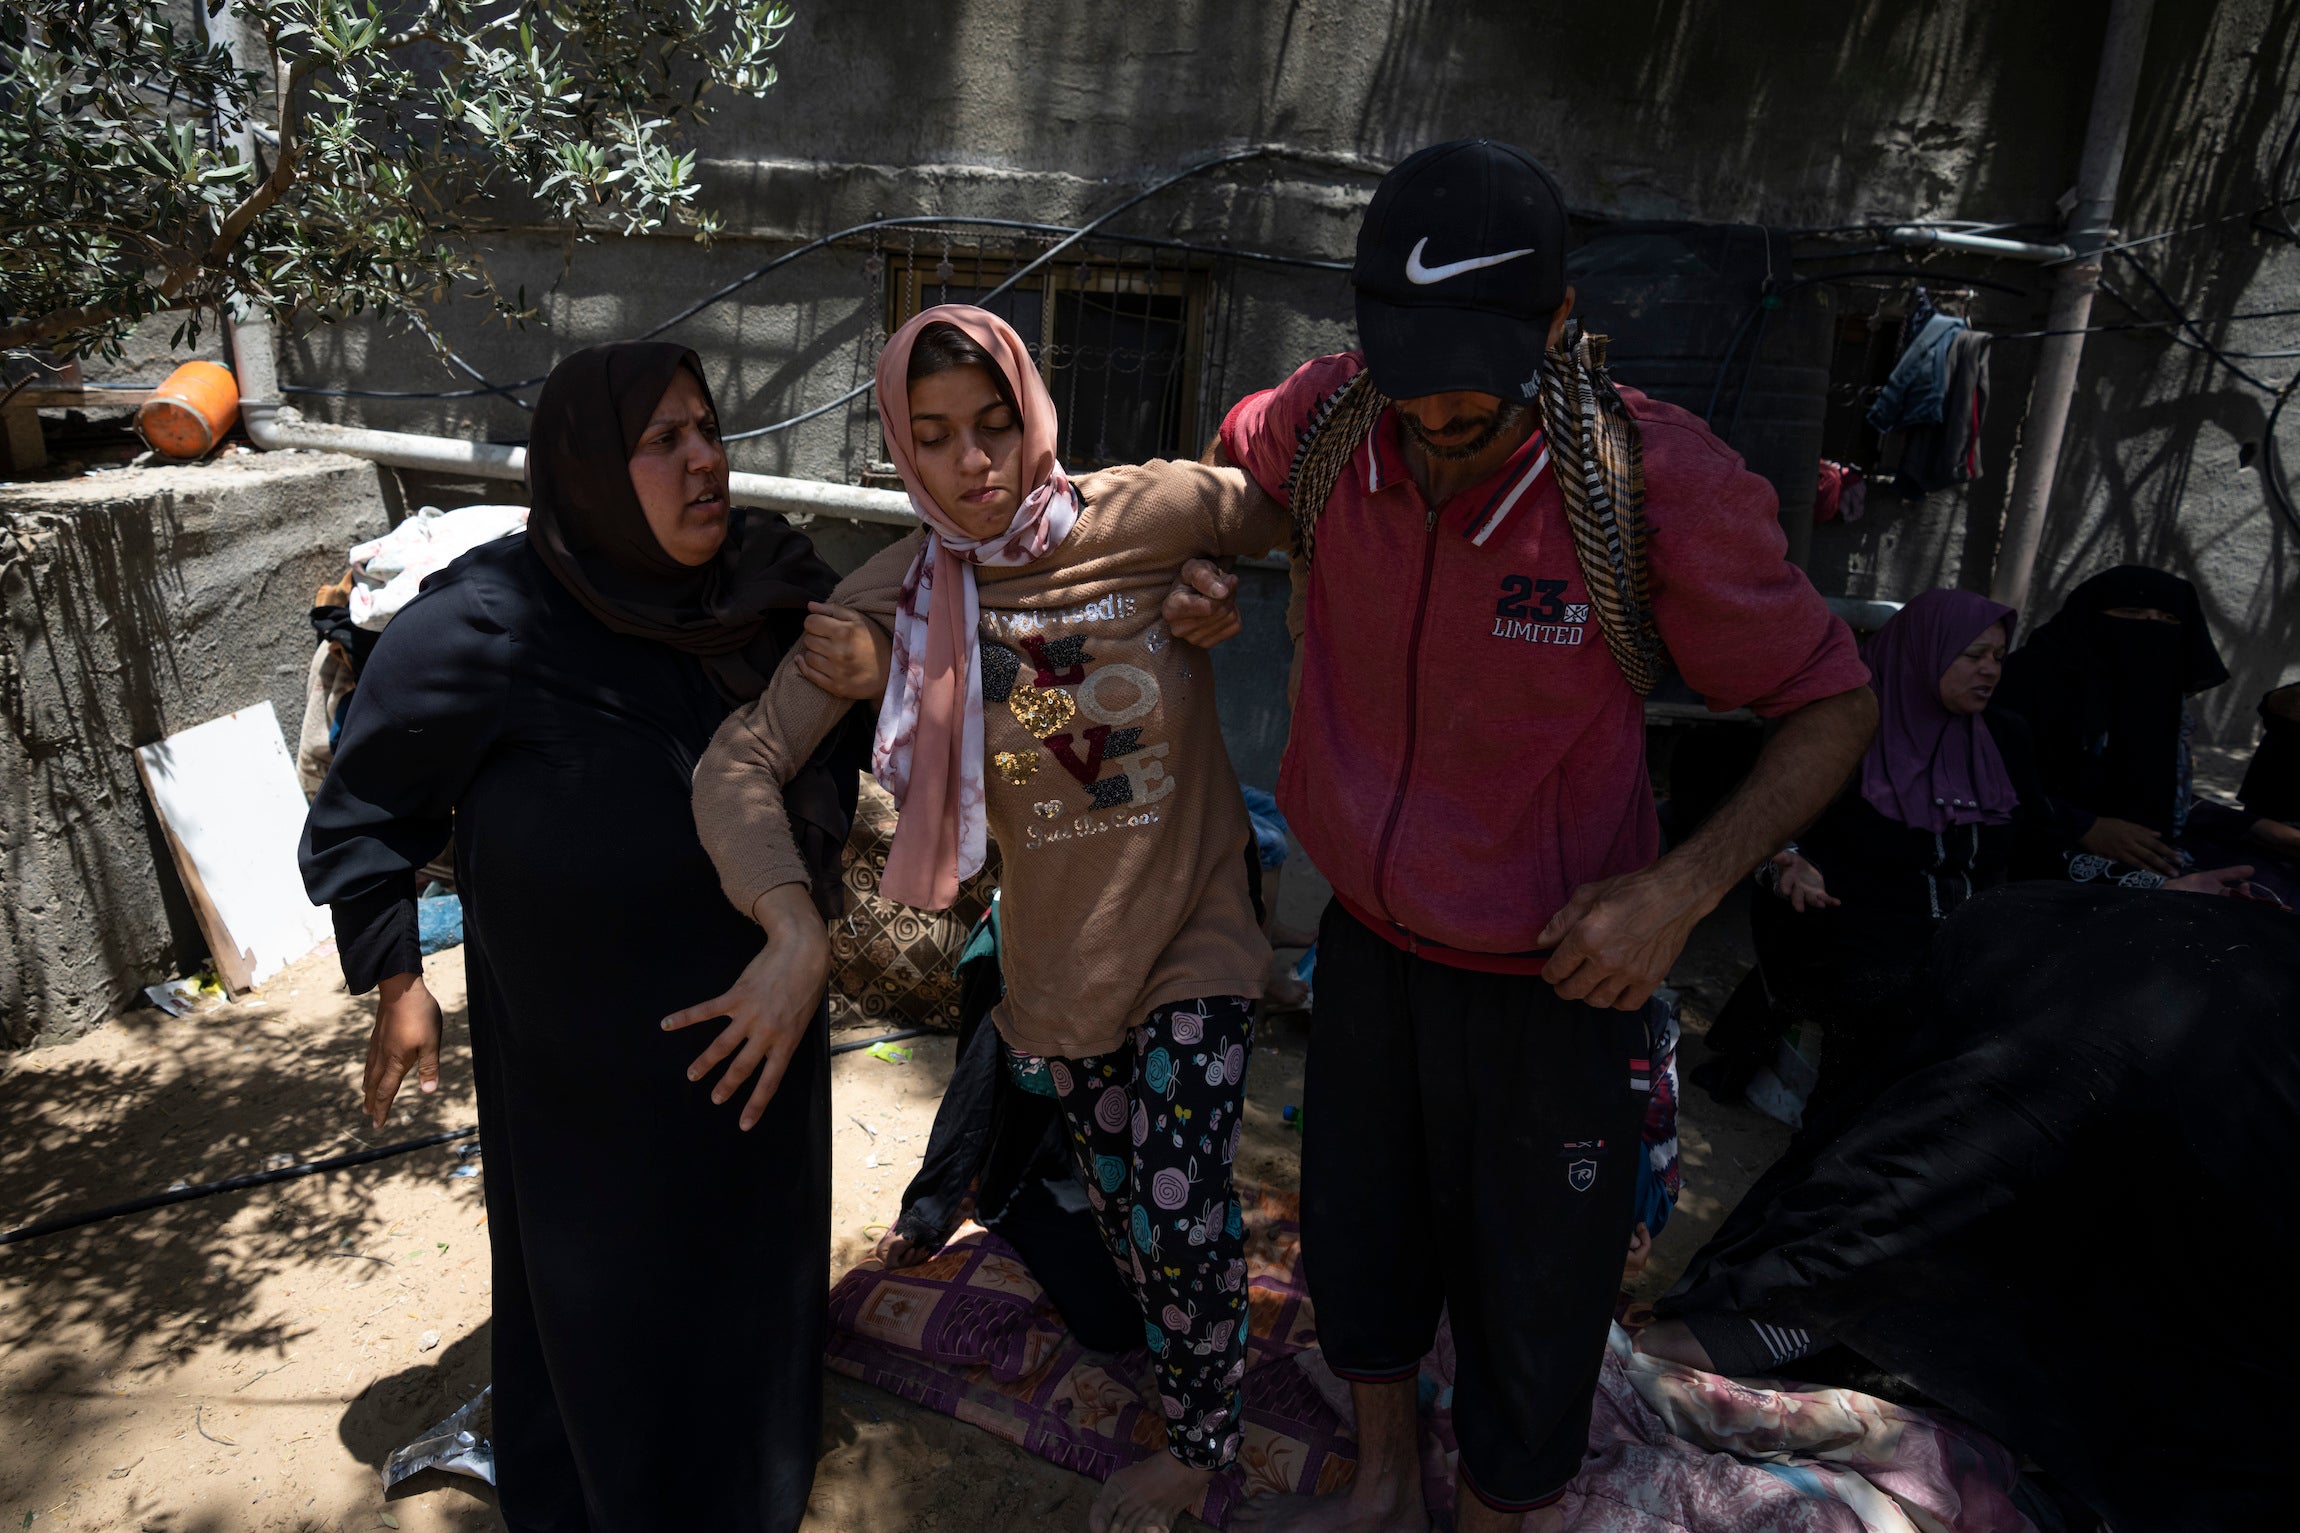 חנין נבהאן, צעירה עם מוגבלות גופנית ושכלית, ליד חורבות בית משפחתה במחנה הפליטים ג'באליא שברצועת עזה, שנהרס בהפצצה ישראלית ב-14 במאי 2023.